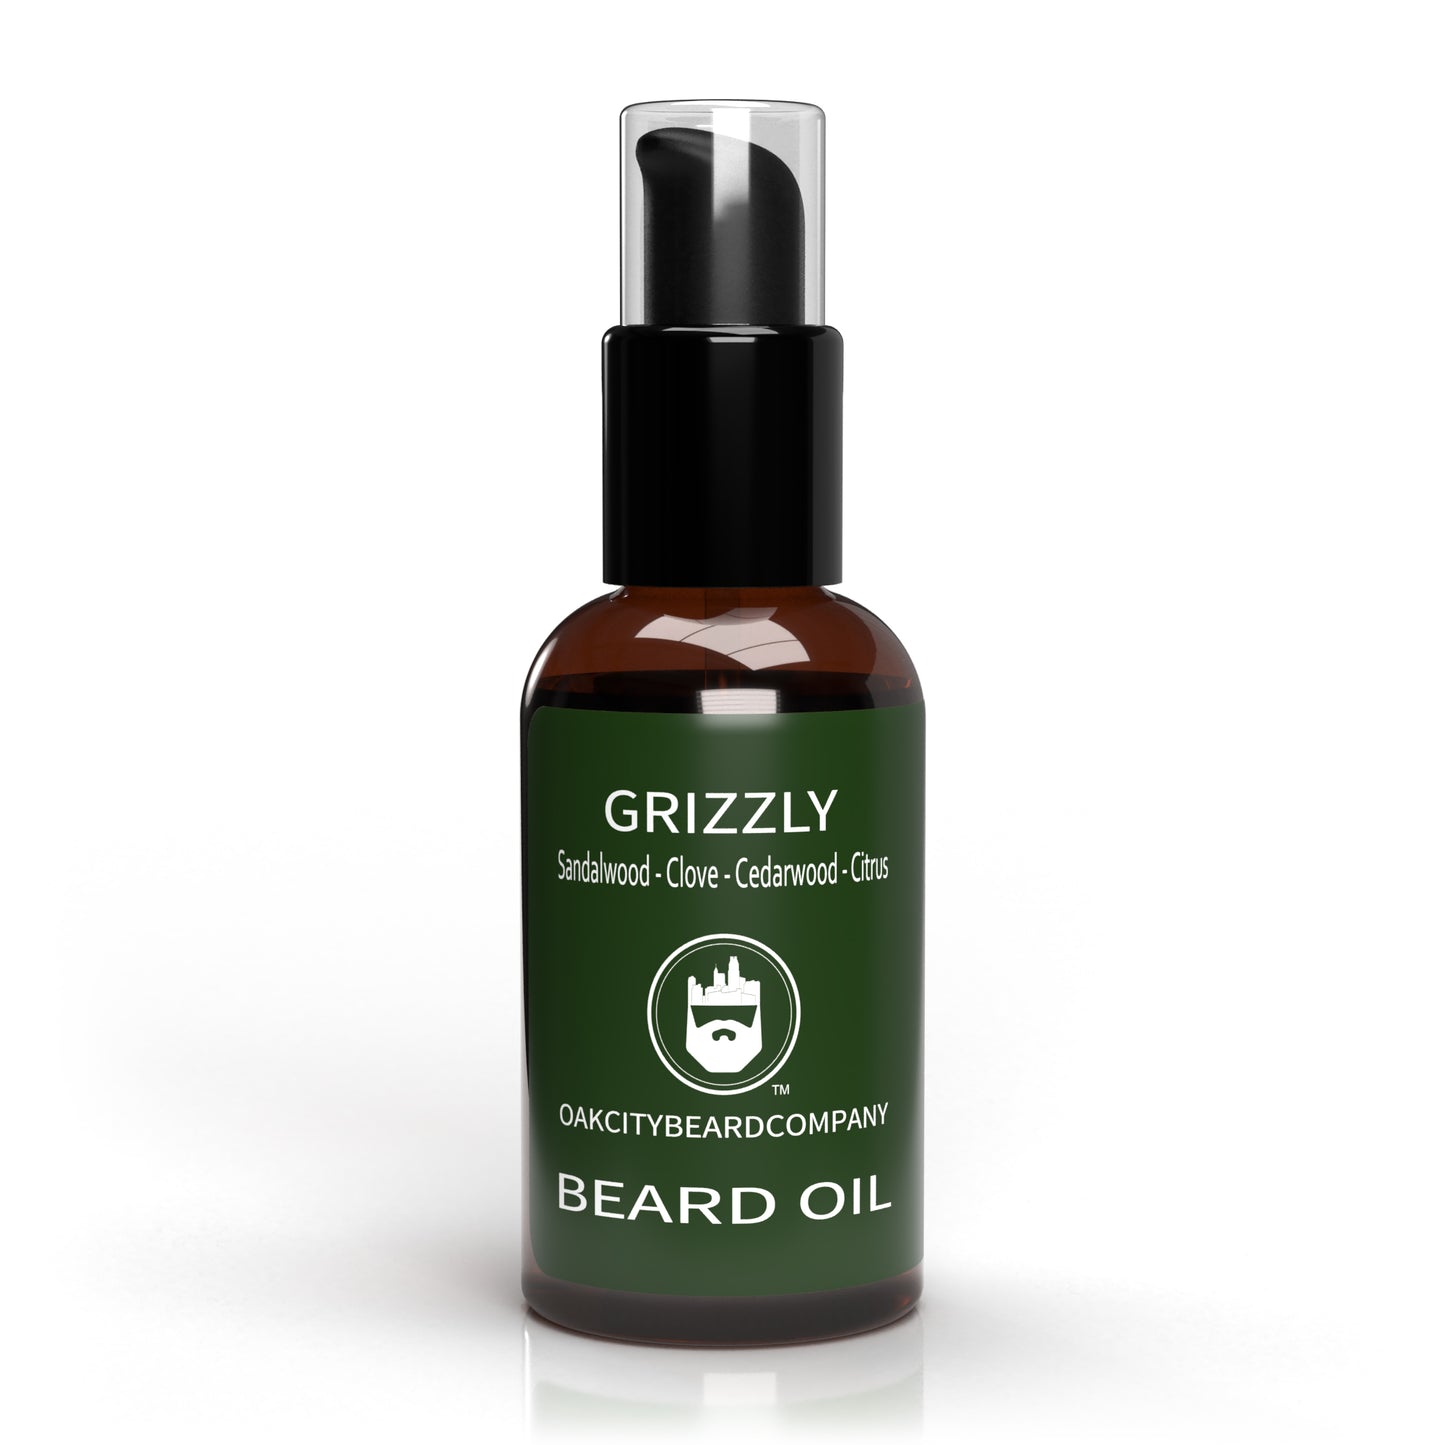 Grizzly (Beard Oil) by Oak City Beard Company